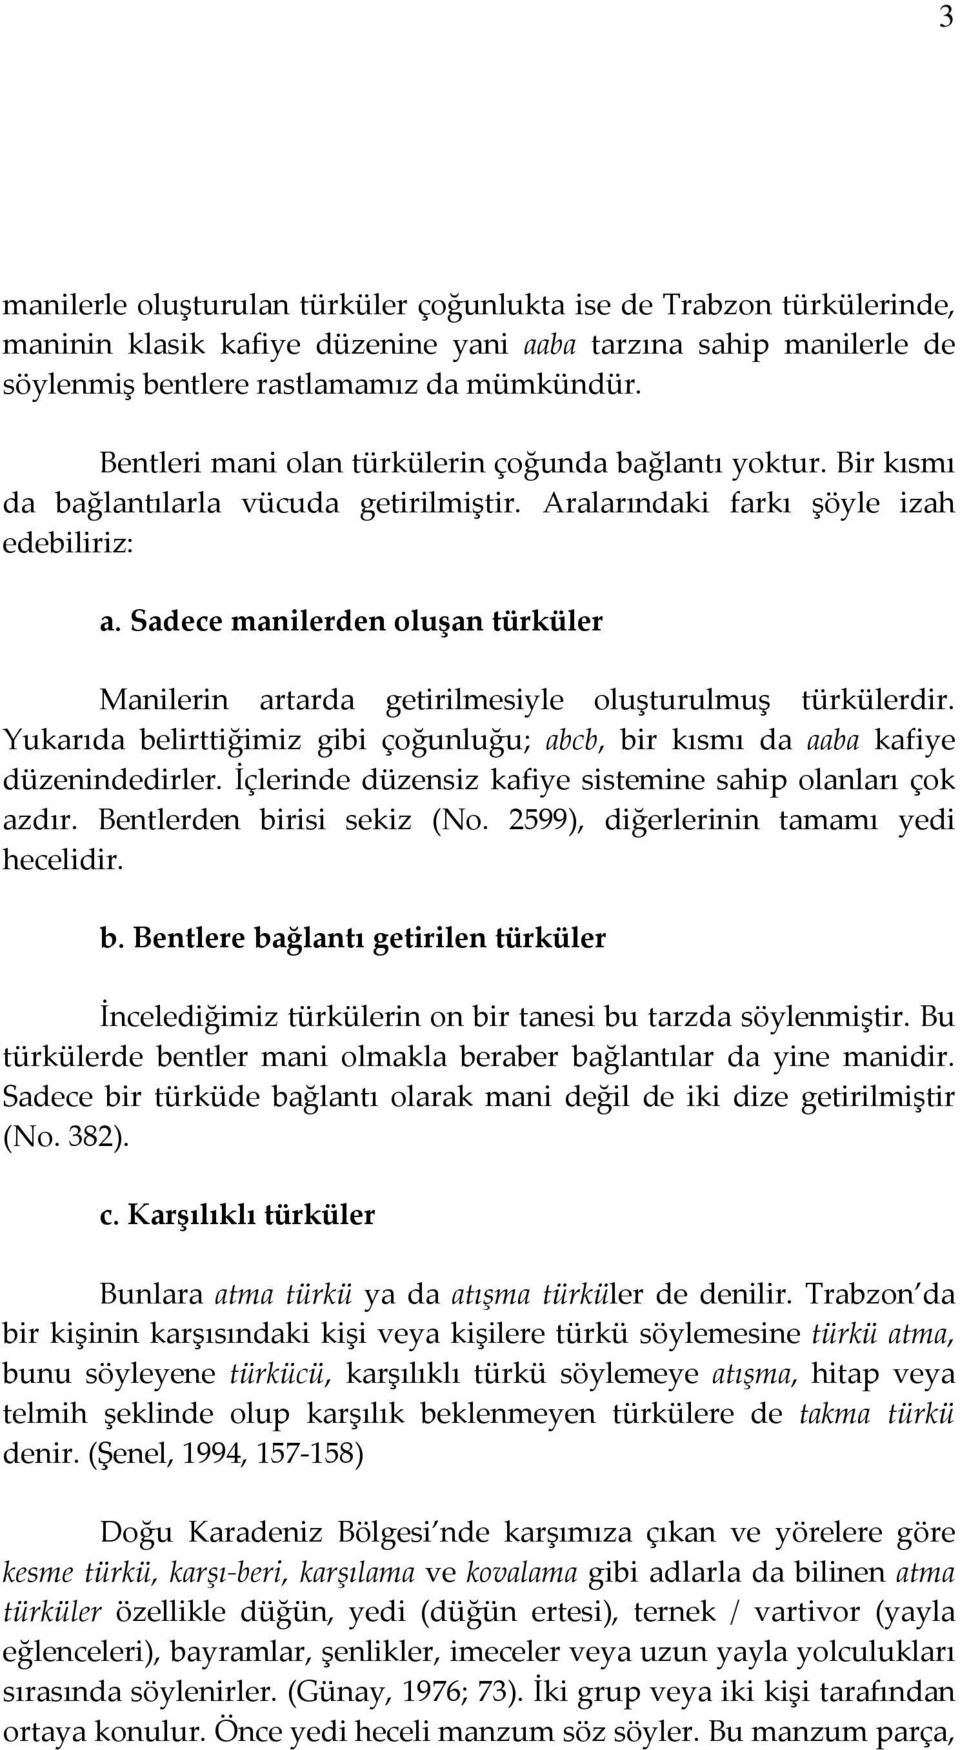 trabzon yoresi turkuleri dr dogan kaya pdf free download